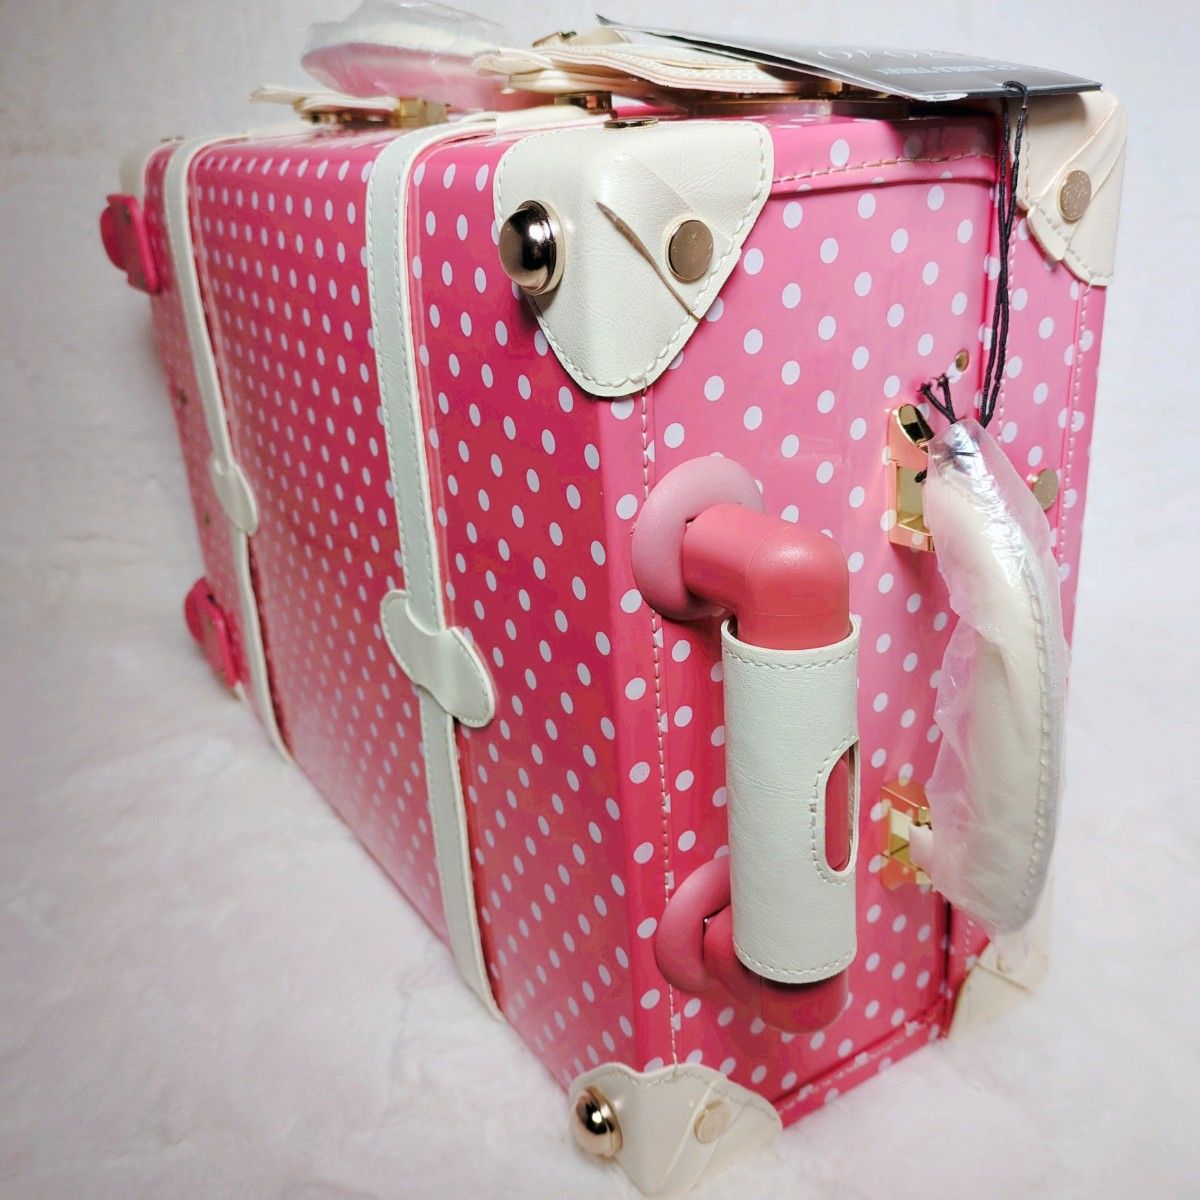 【新品未使用】 T＆S スーツケース キャリーバッグ 水玉ドット ピンク 旅行バッグ トランク アタッシュケース キャリーケース 